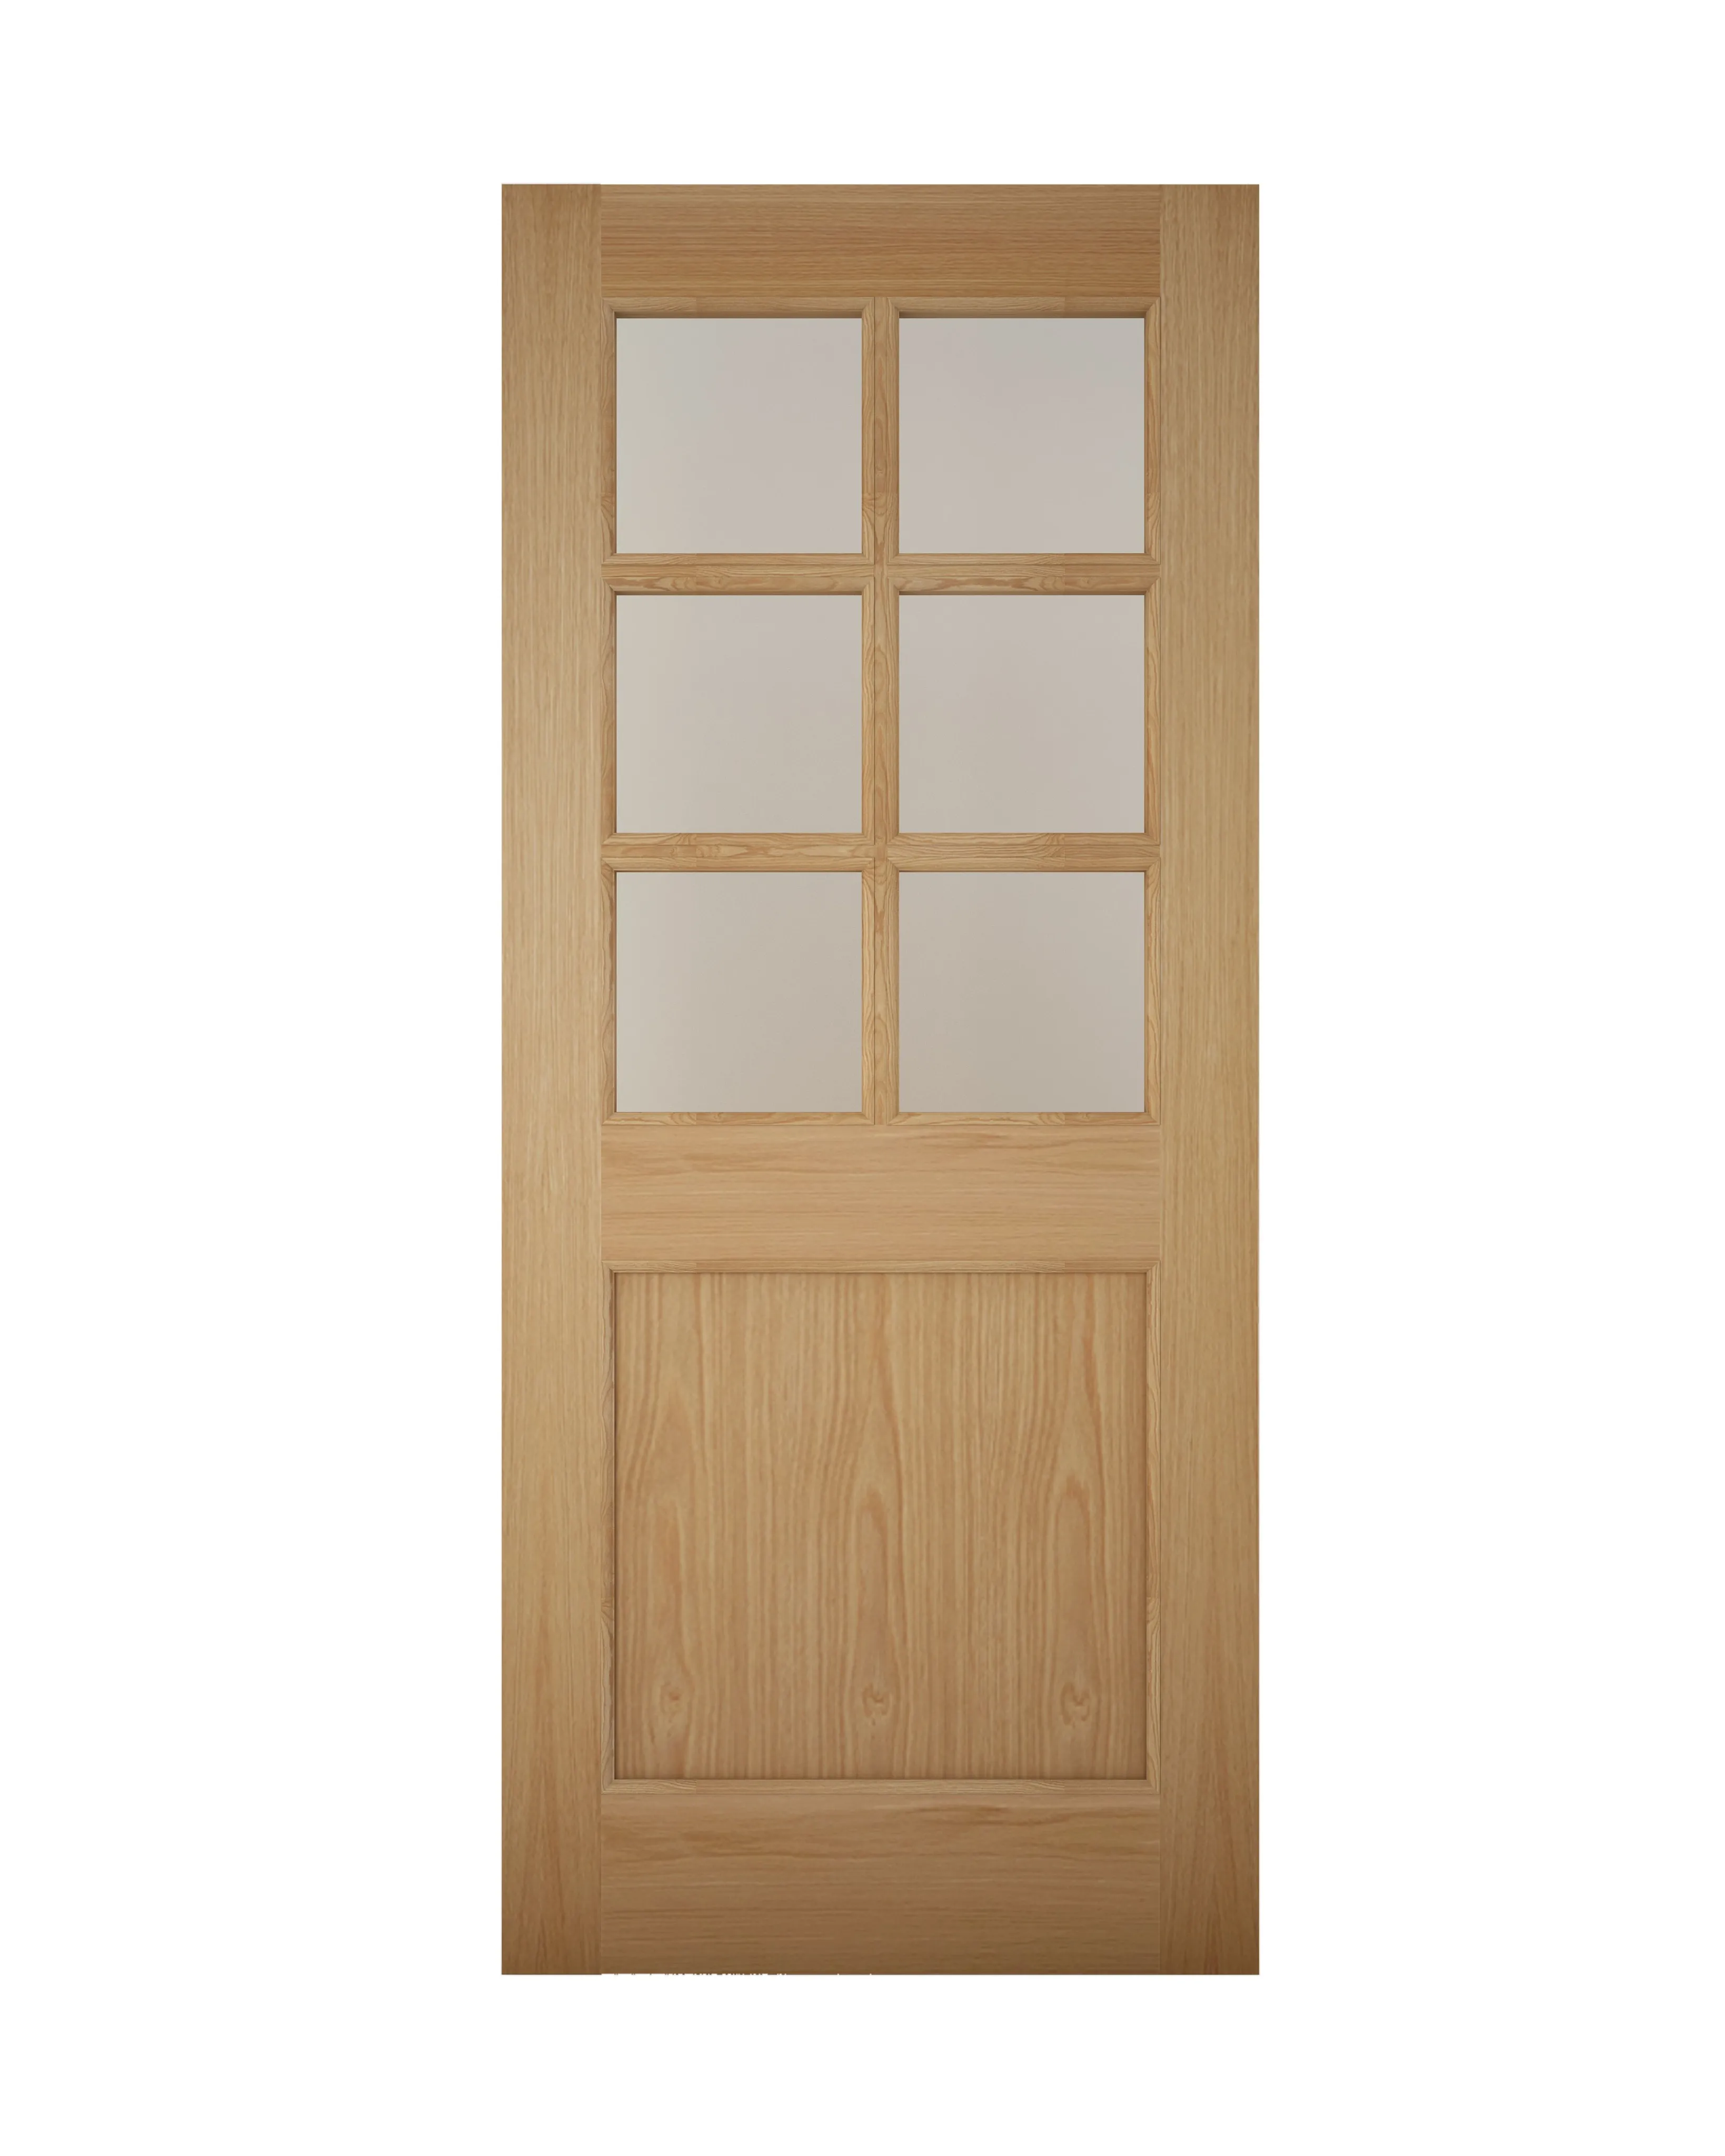 Geom Clear Glazed White oak veneer LH & RH External Back door, (H)1981mm (W)838mm